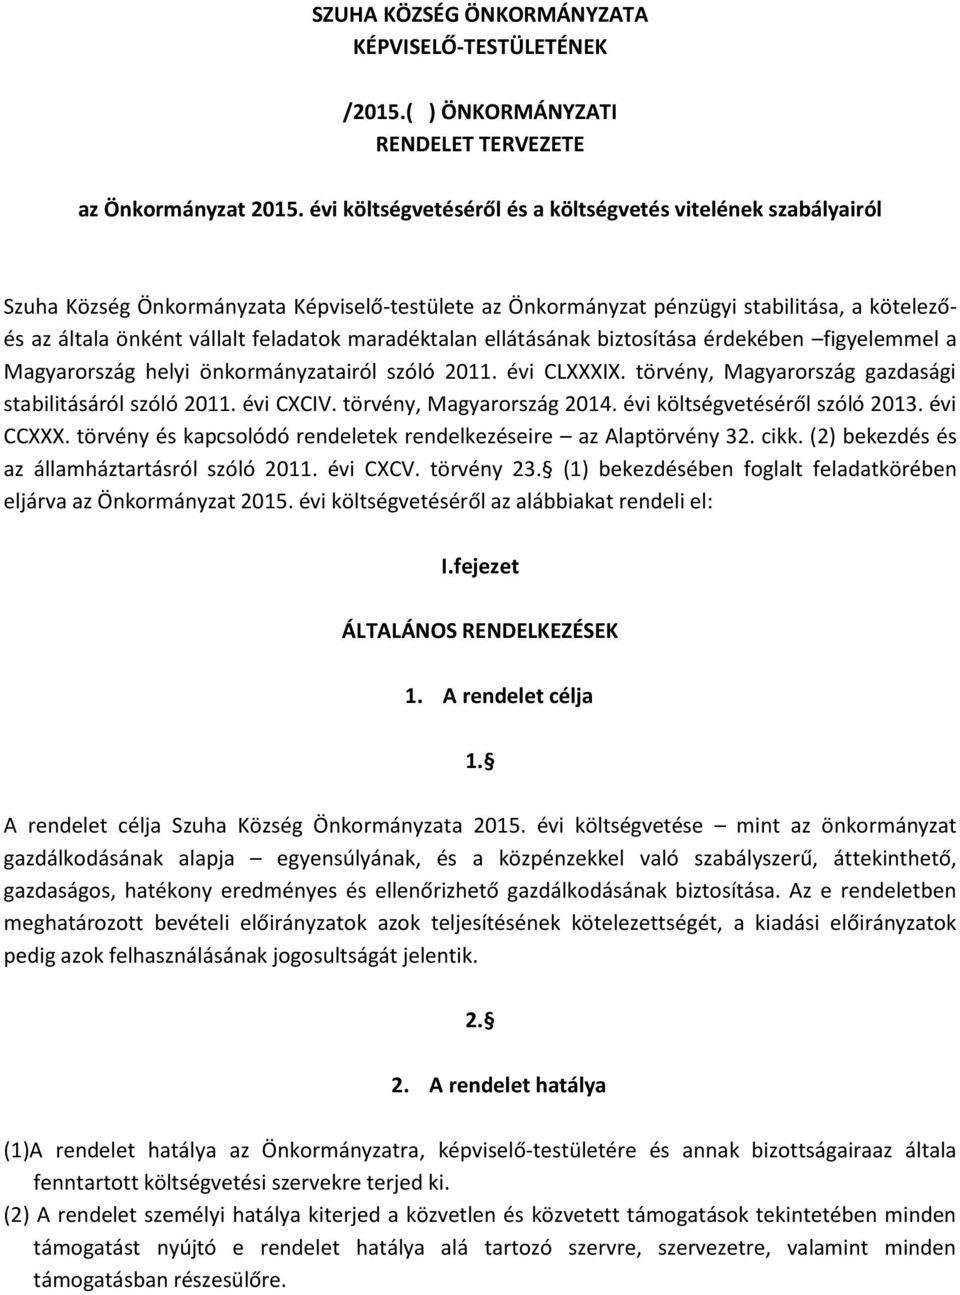 maradéktalan ellátásának biztosítása érdekében figyelemmel a Magyarország helyi önkormányzatairól szóló 2011. évi CLXXXIX. törvény, Magyarország gazdasági stabilitásáról szóló 2011. évi CXCIV.